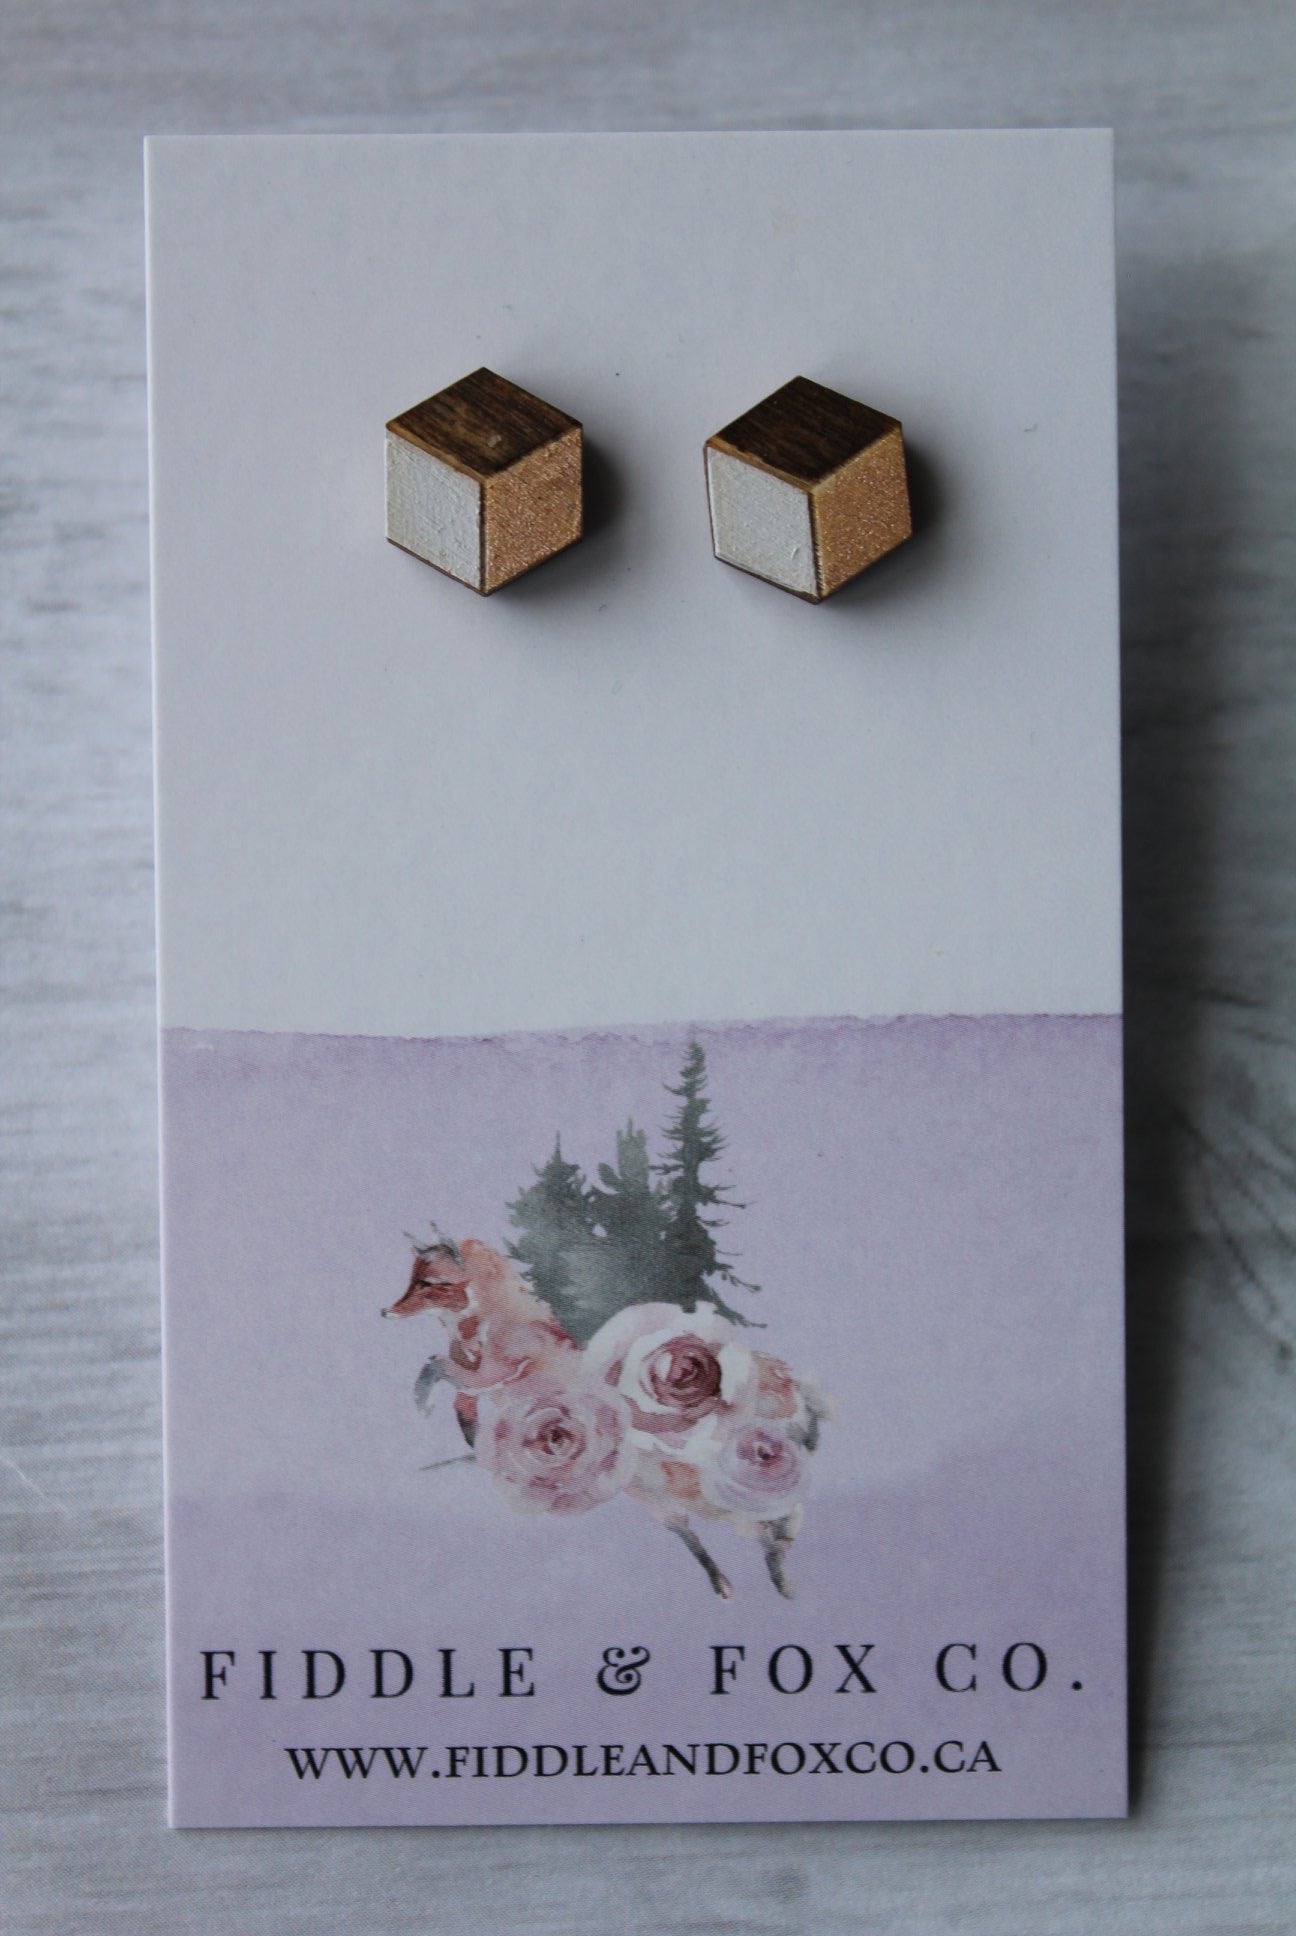 Geometric Wood Earrings • White/Rose Gold